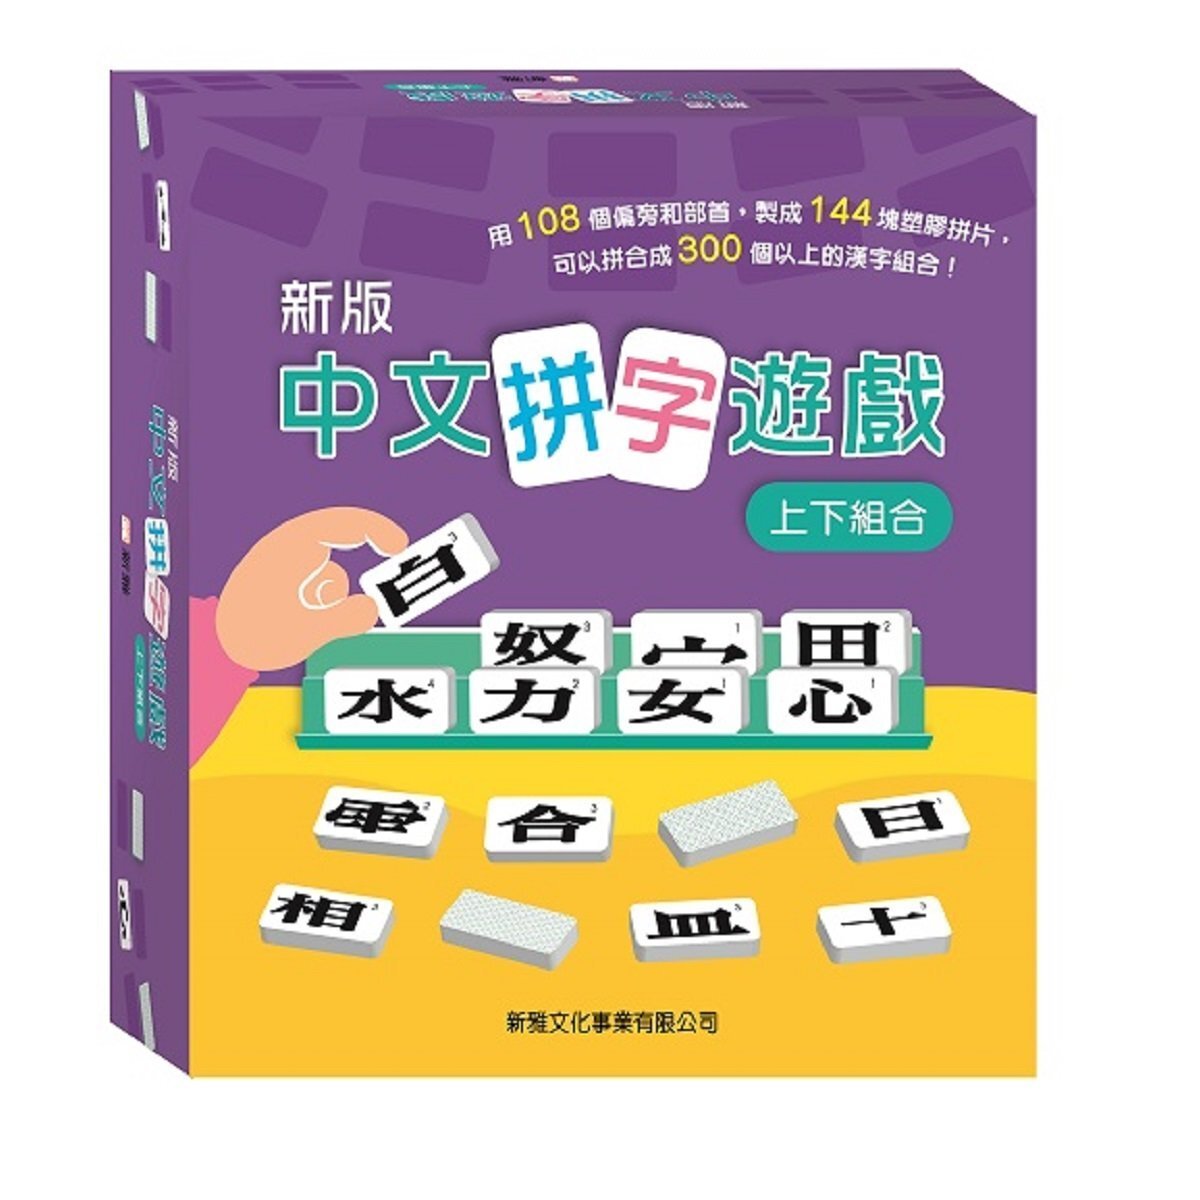 (新版) 中文拼字遊戲 - 上下組合 (禮盒裝)